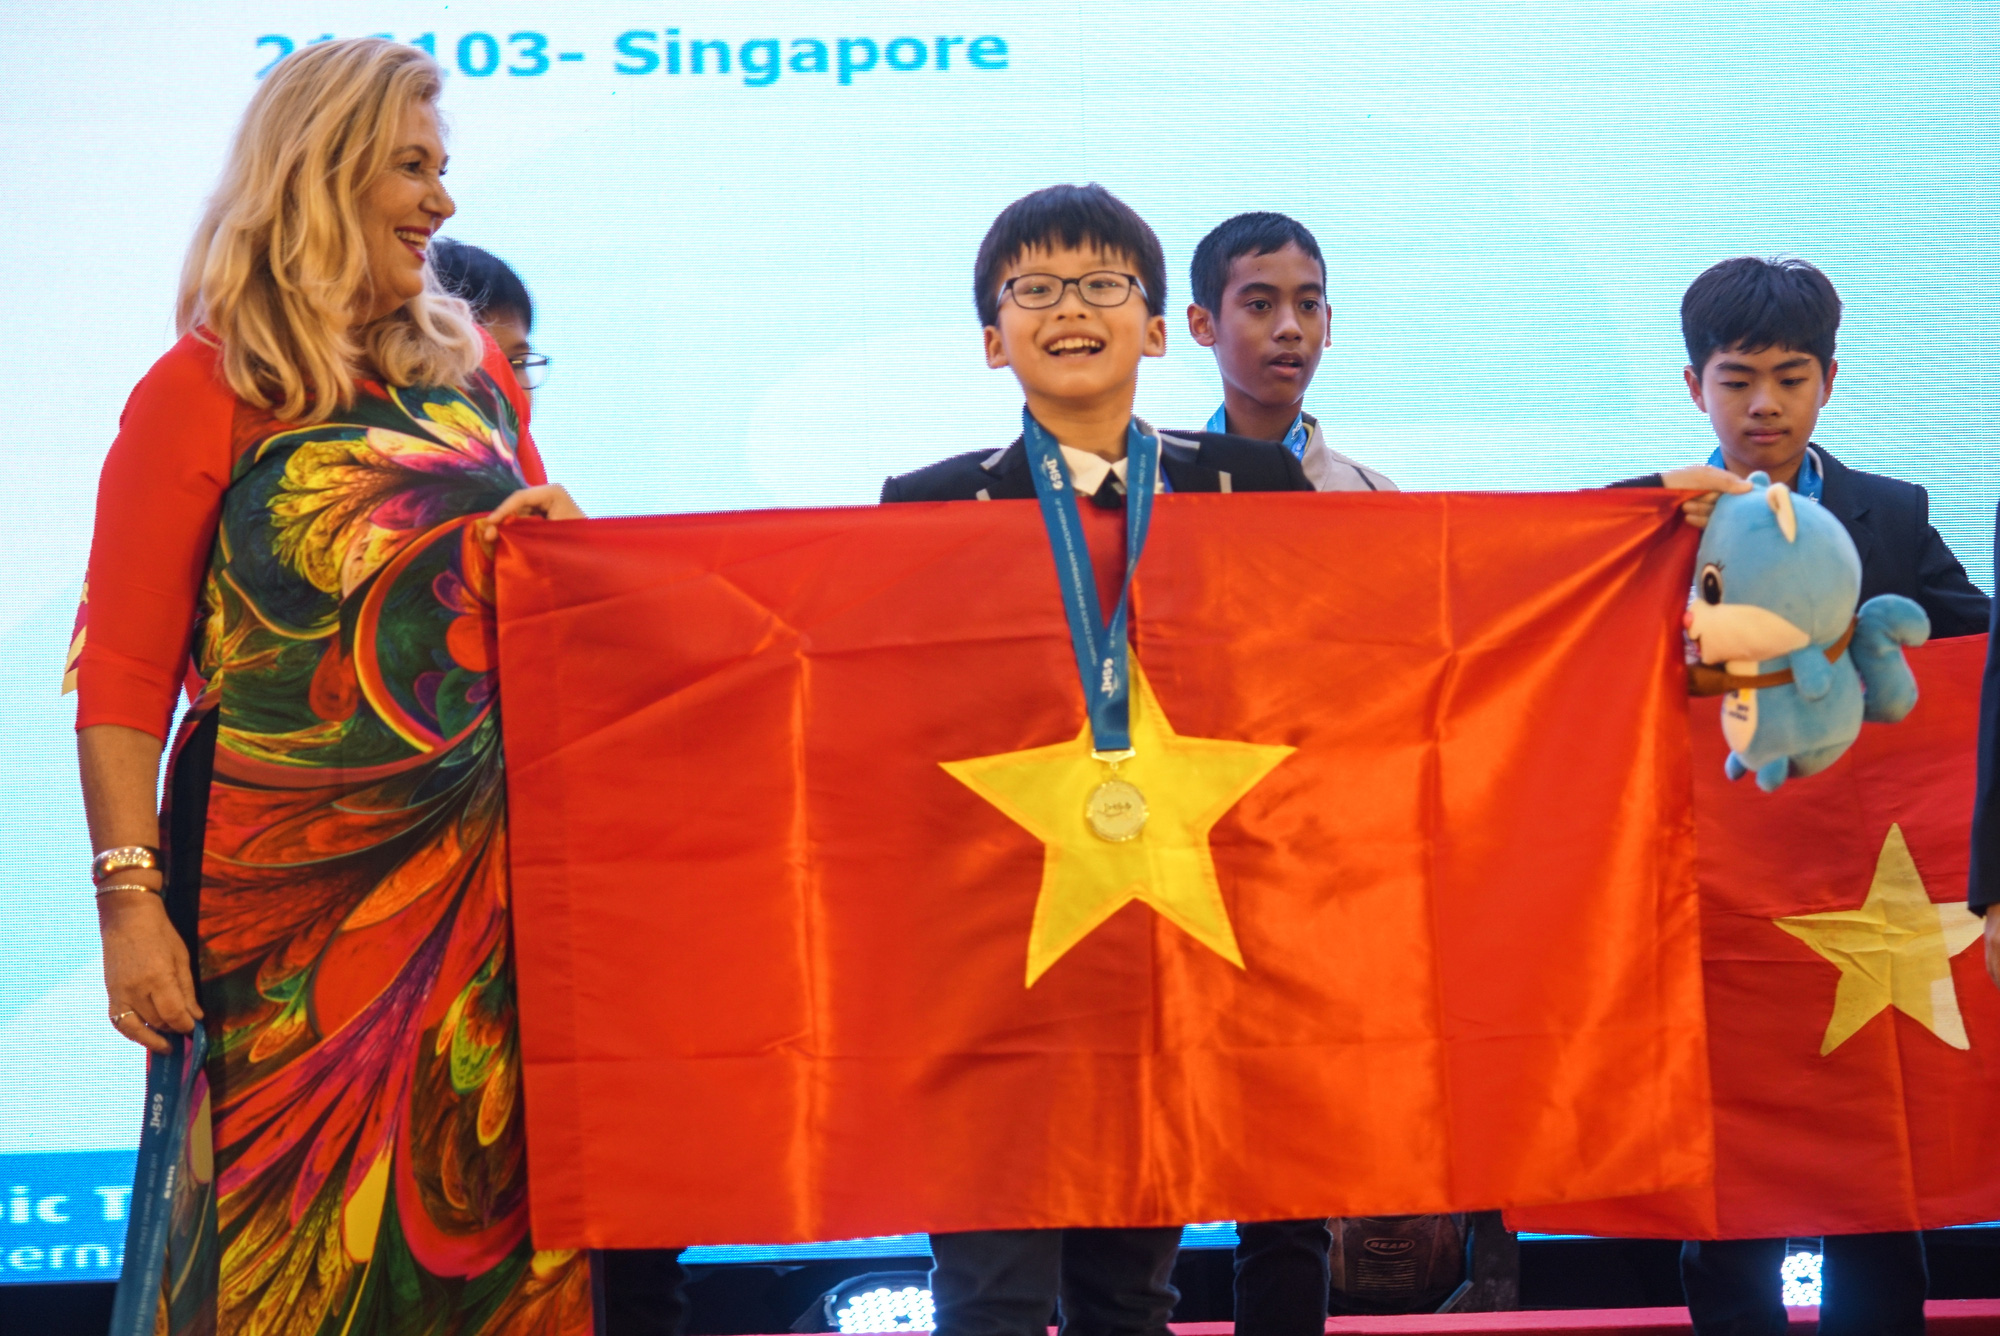 Việt Nam giành 15 HCV tại kỳ thi Olympic toán học và khoa học quốc tế 2019 - Ảnh 2.